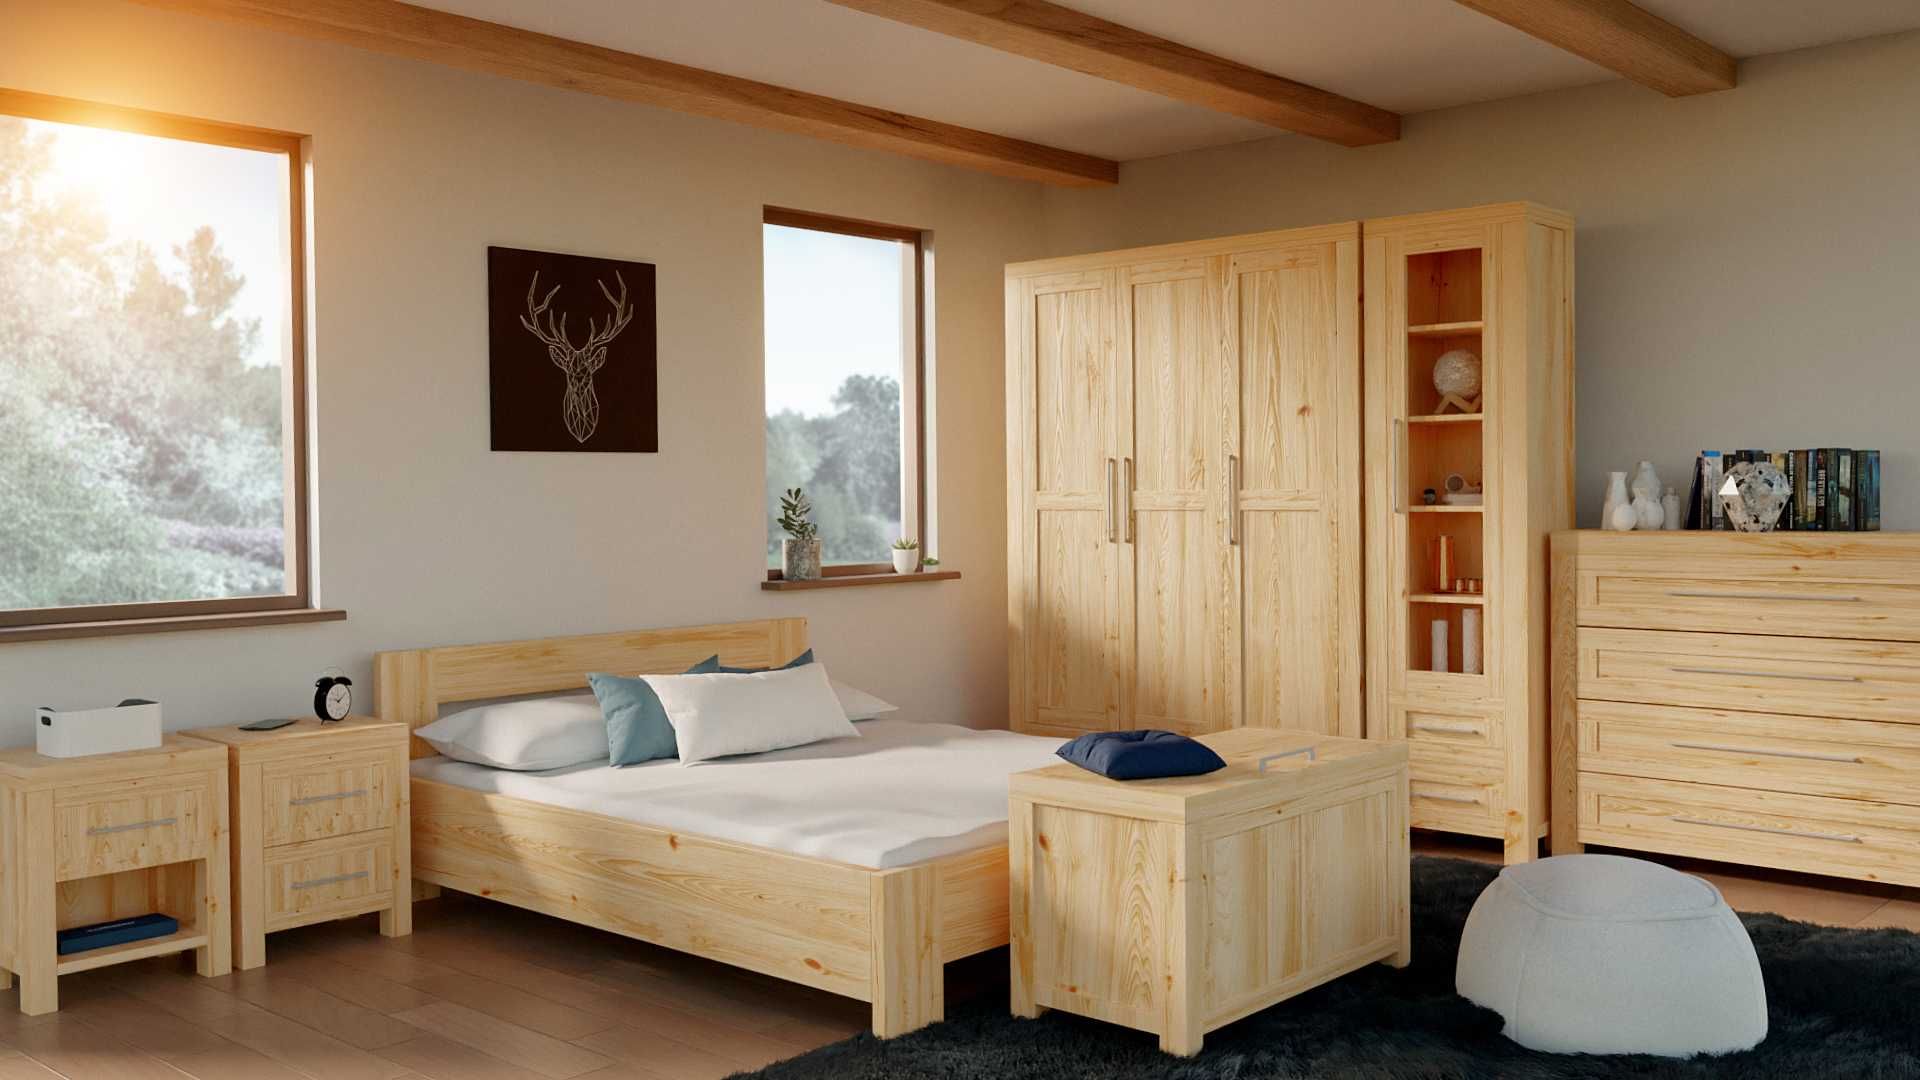 Łóżko Piętrowe Sosnowe Drewniane Pokój Dziecięcy Sypialnia